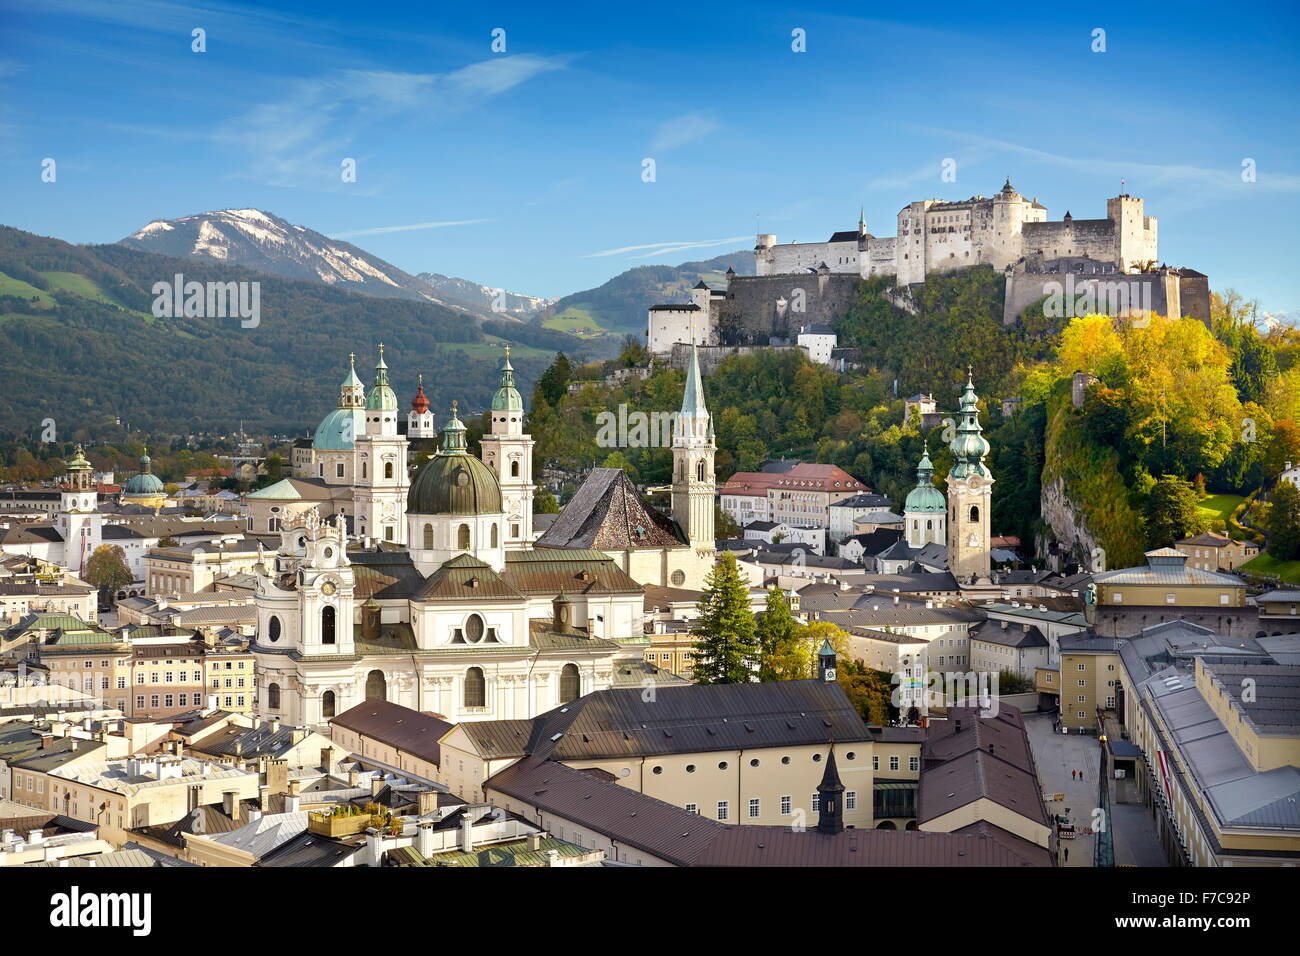 Vista aerea della città vecchia di Salisburgo, il castello visibile in background, Austria Foto Stock